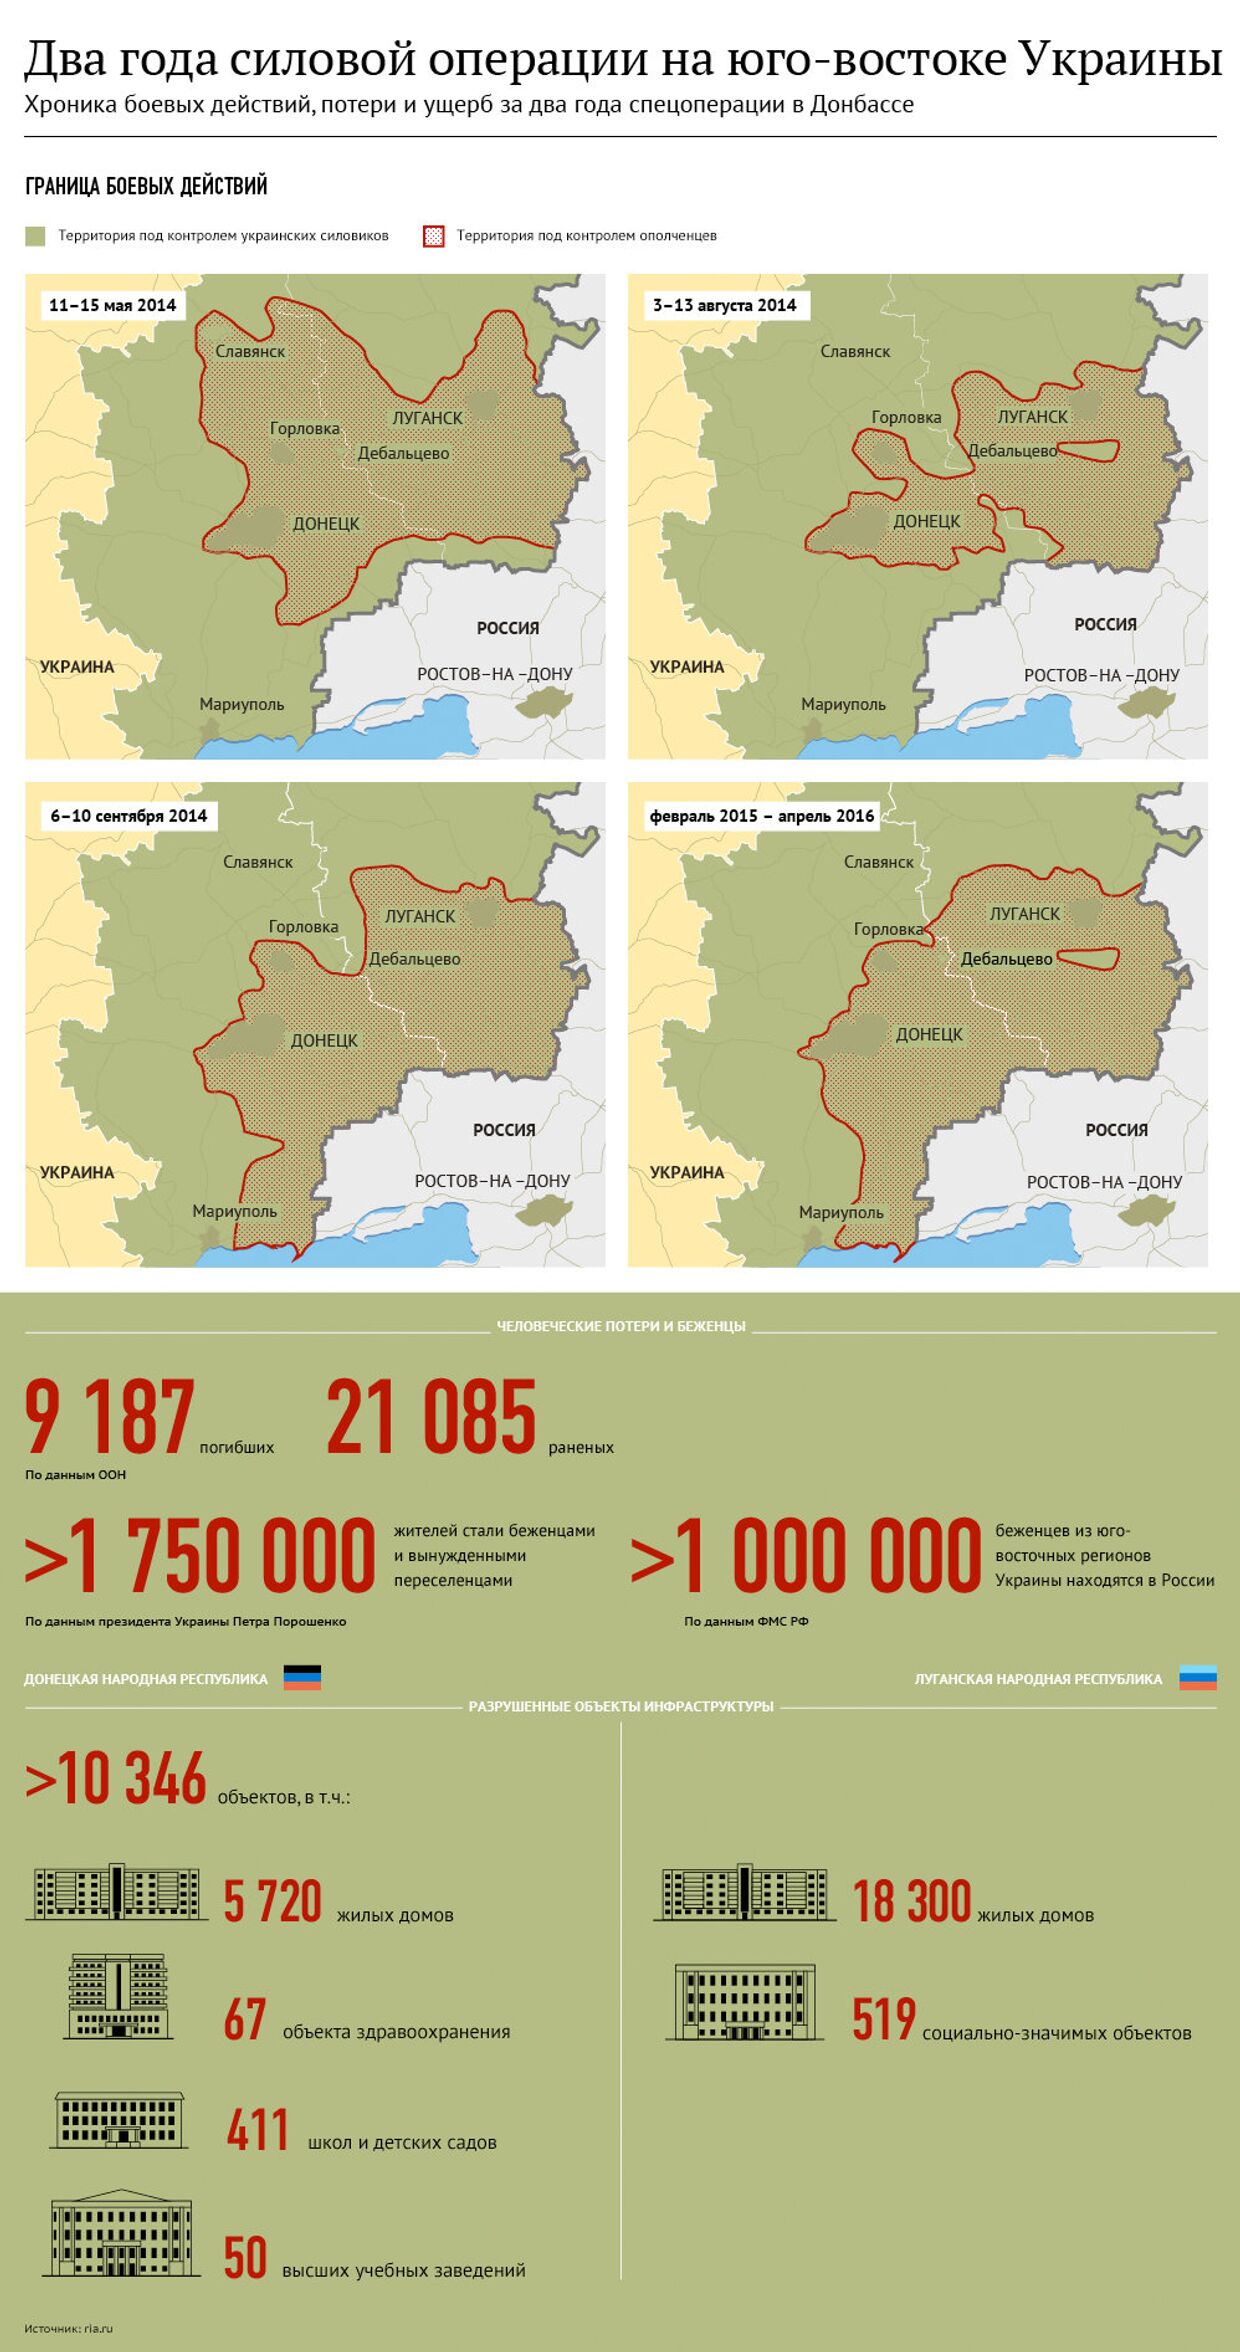 Два года войне на востоке Украины